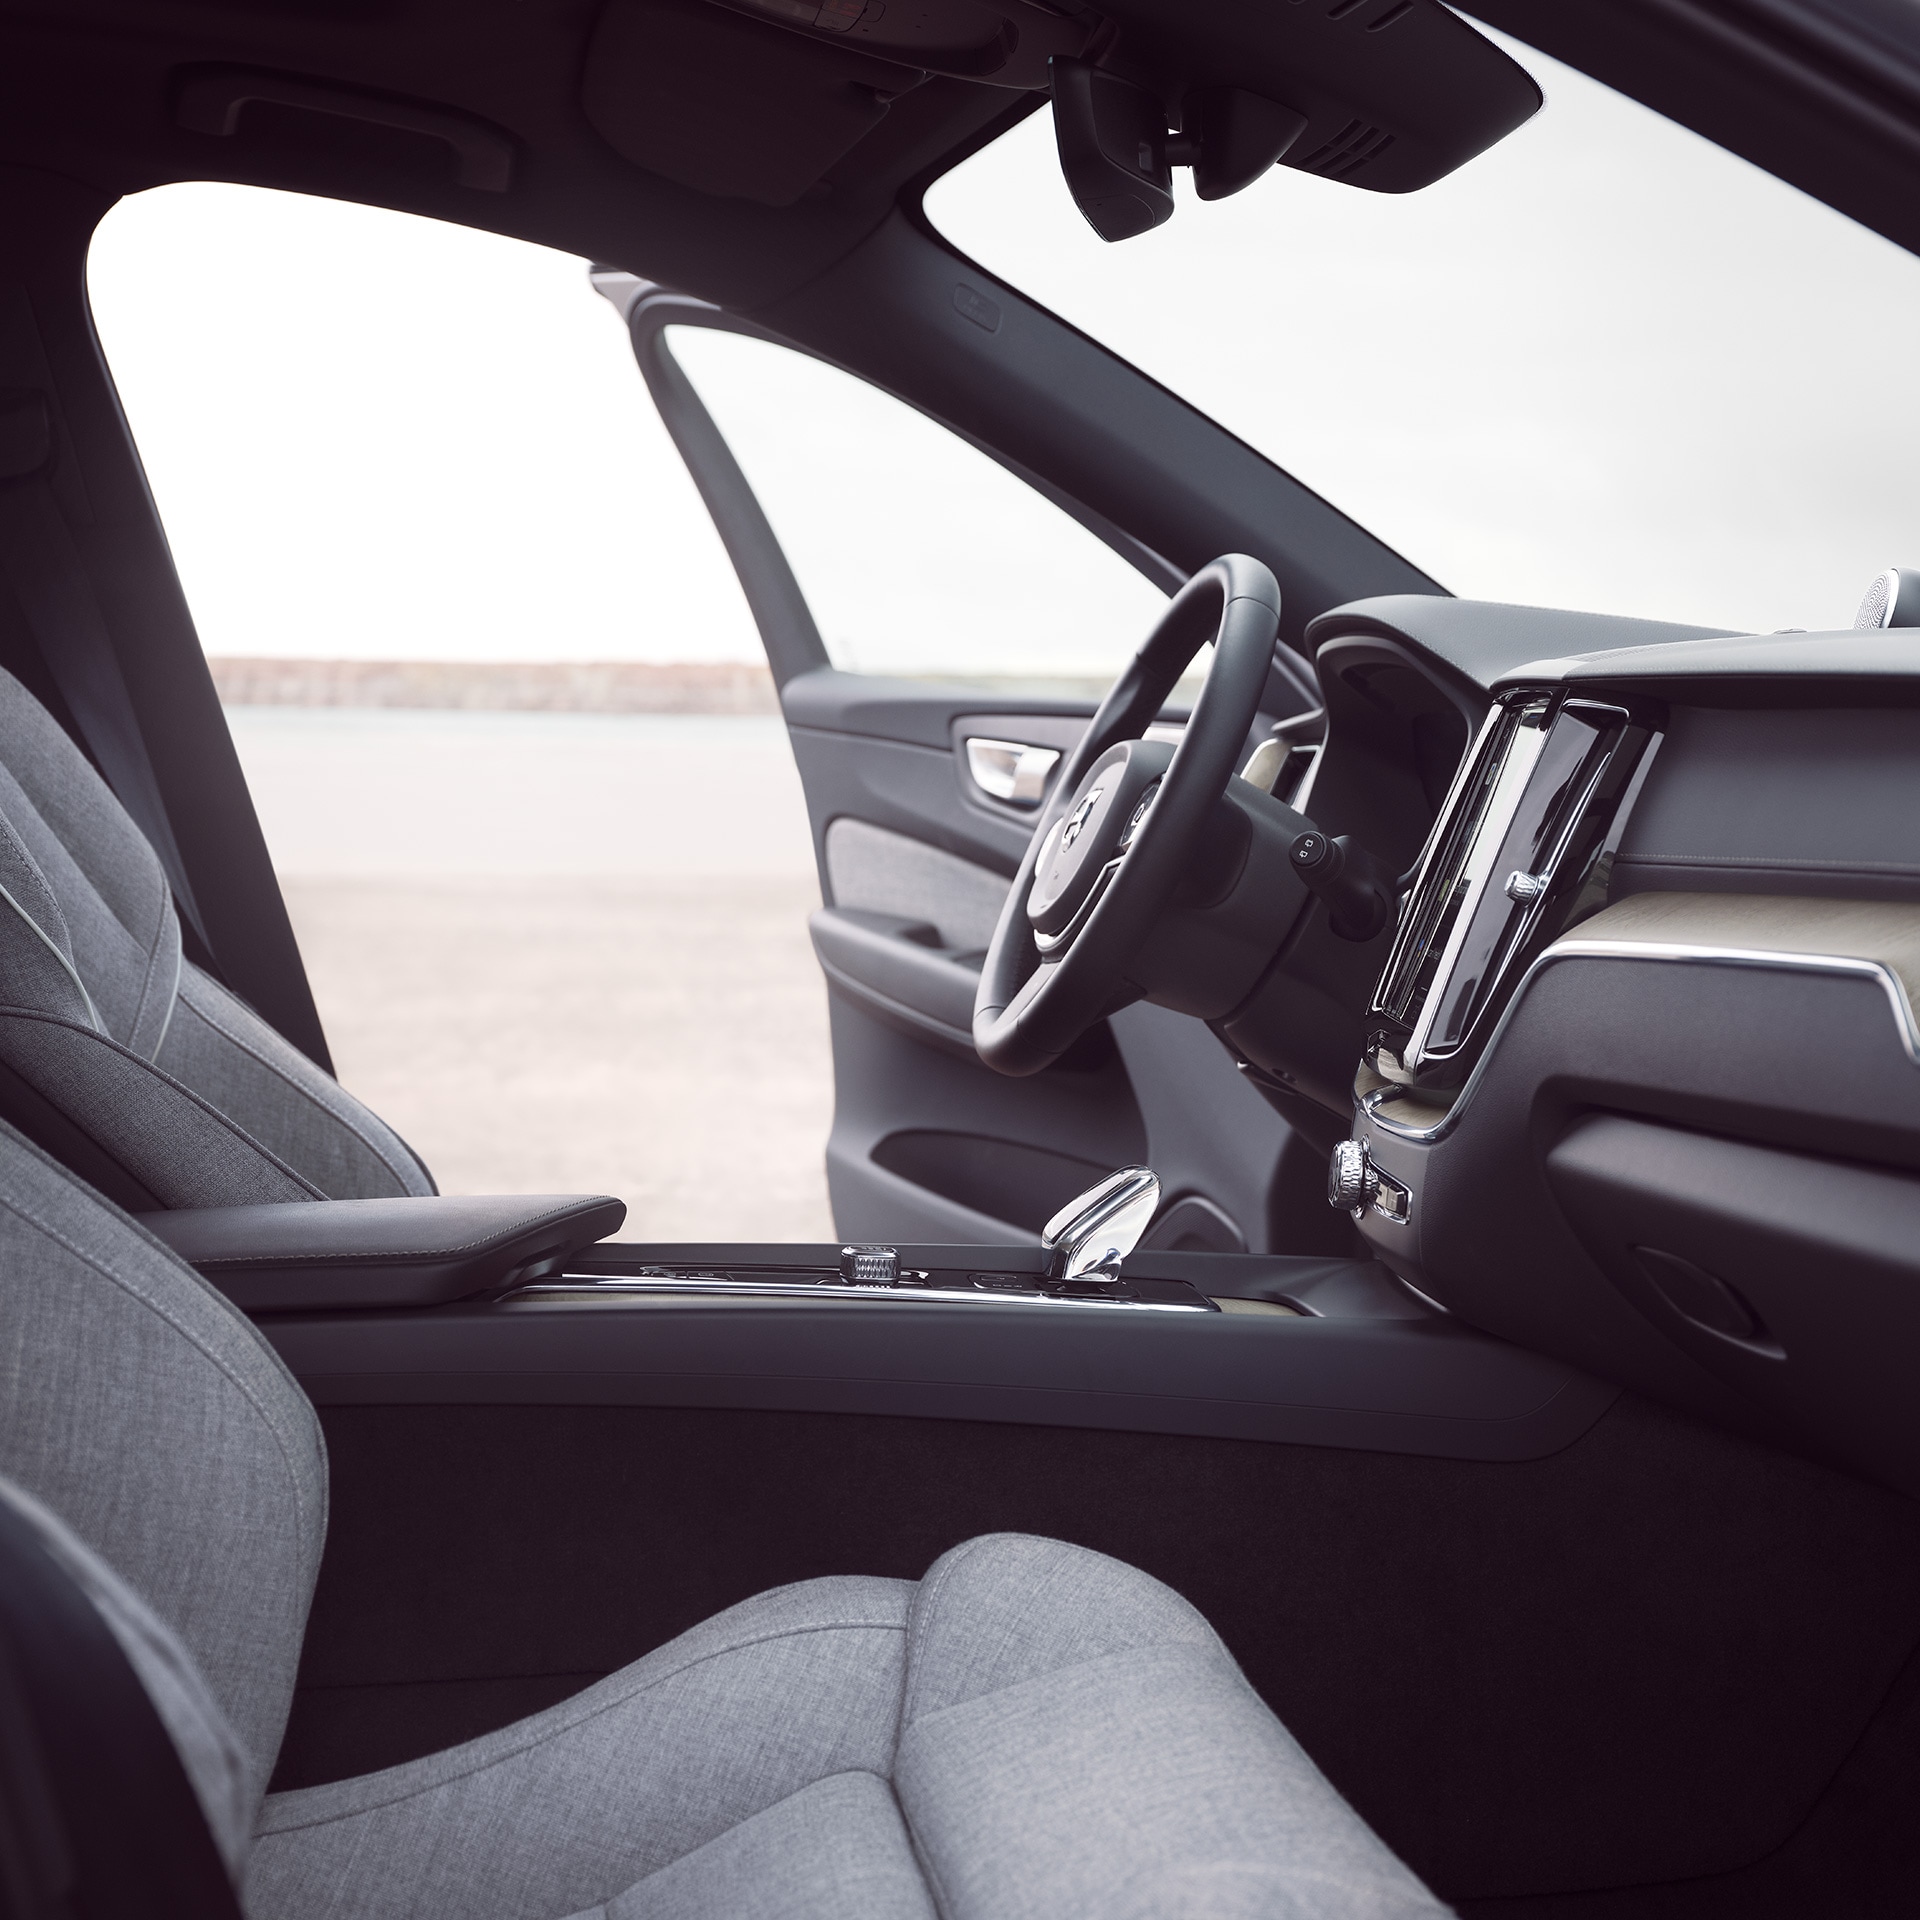 Volvo XC60 Recharge belső terének első része nyitott vezetőajtóval.